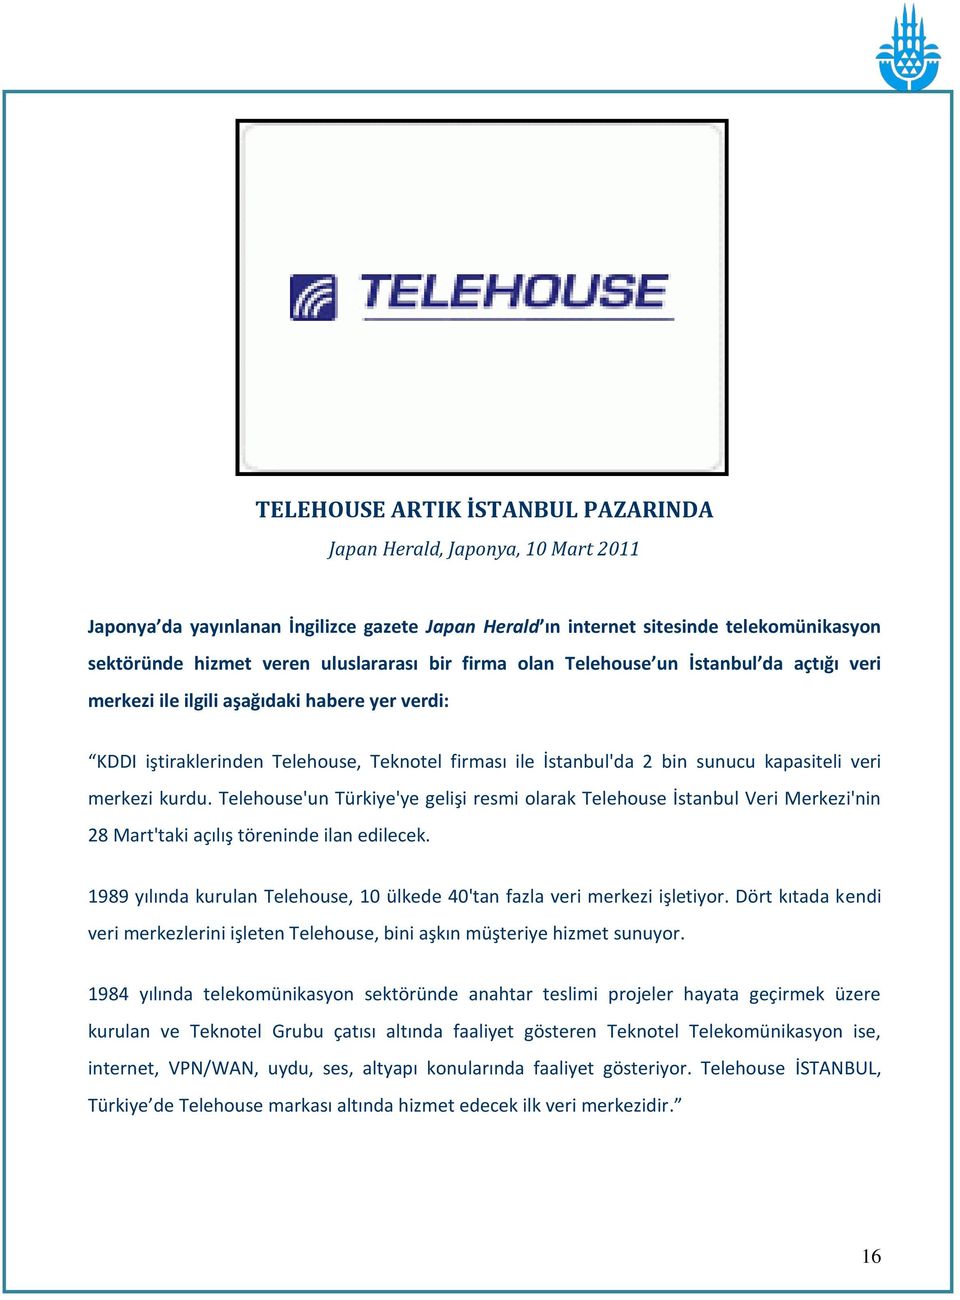 merkezi kurdu. Telehouse'un Türkiye'ye gelişi resmi olarak Telehouse İstanbul Veri Merkezi'nin 28 Mart'taki açılış töreninde ilan edilecek.